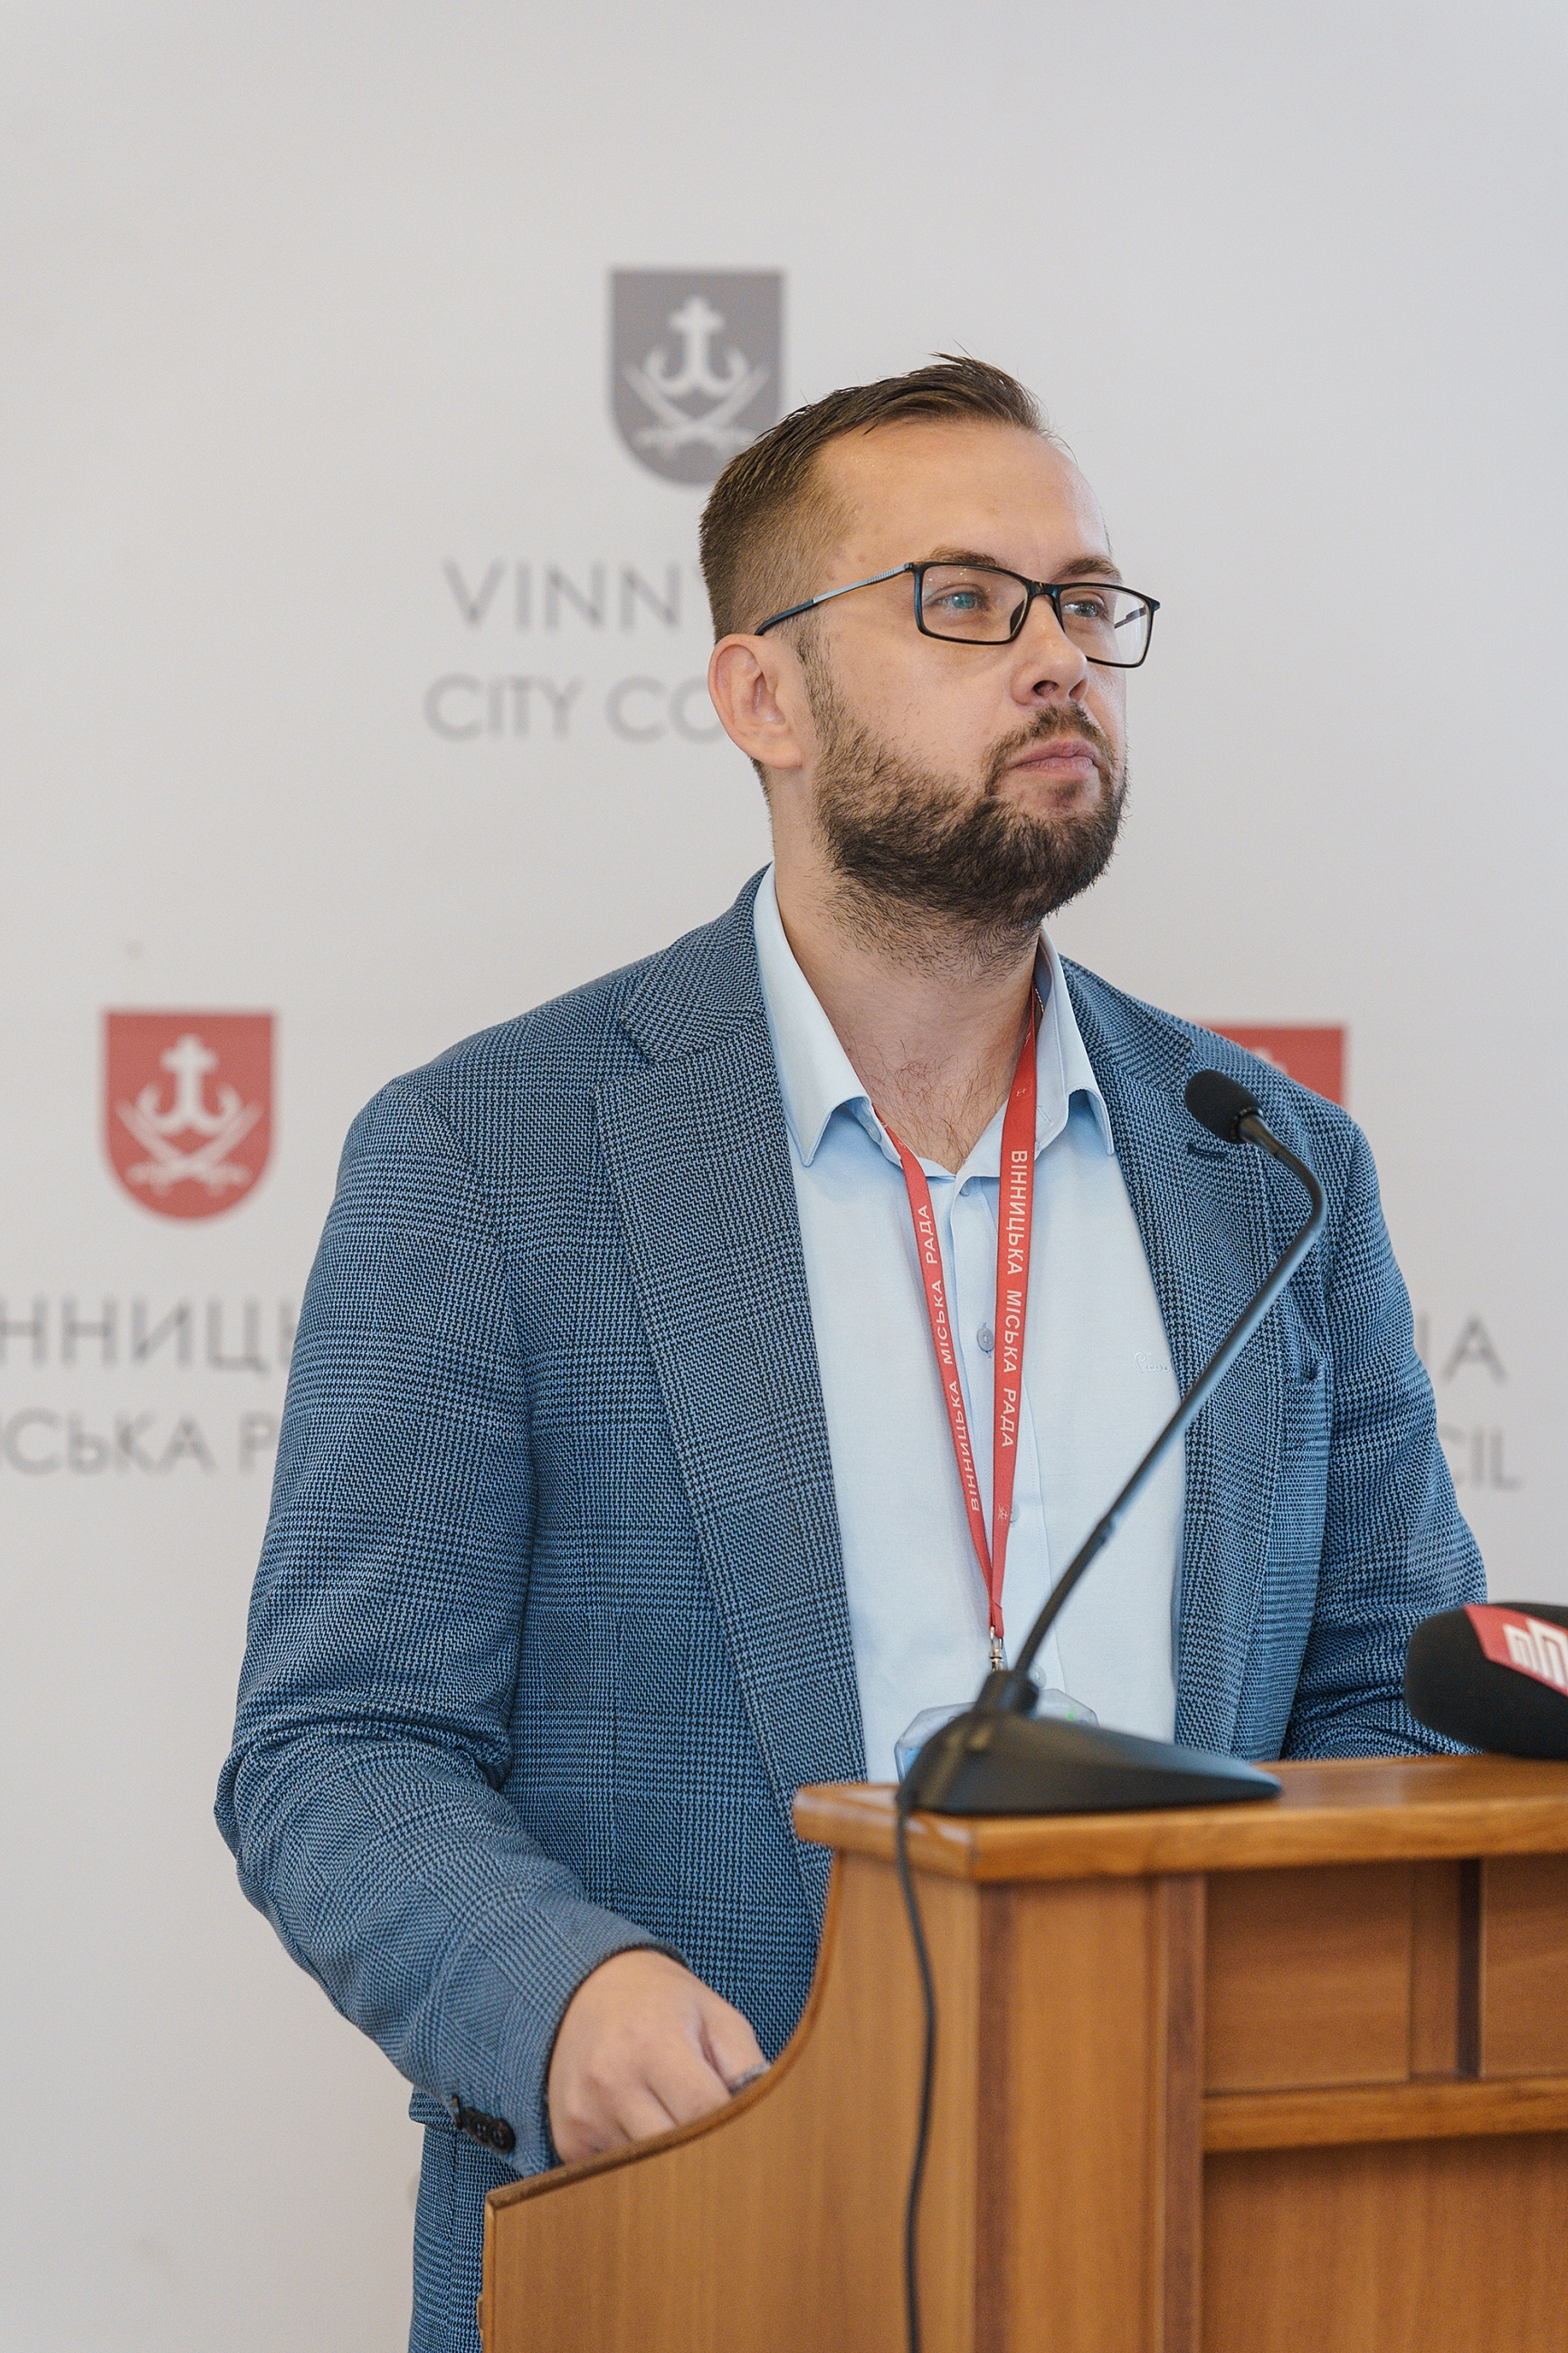 Сергій Моргунов: "Ми відновлюємо роботу з виготовлення тролейбусів VinLine"